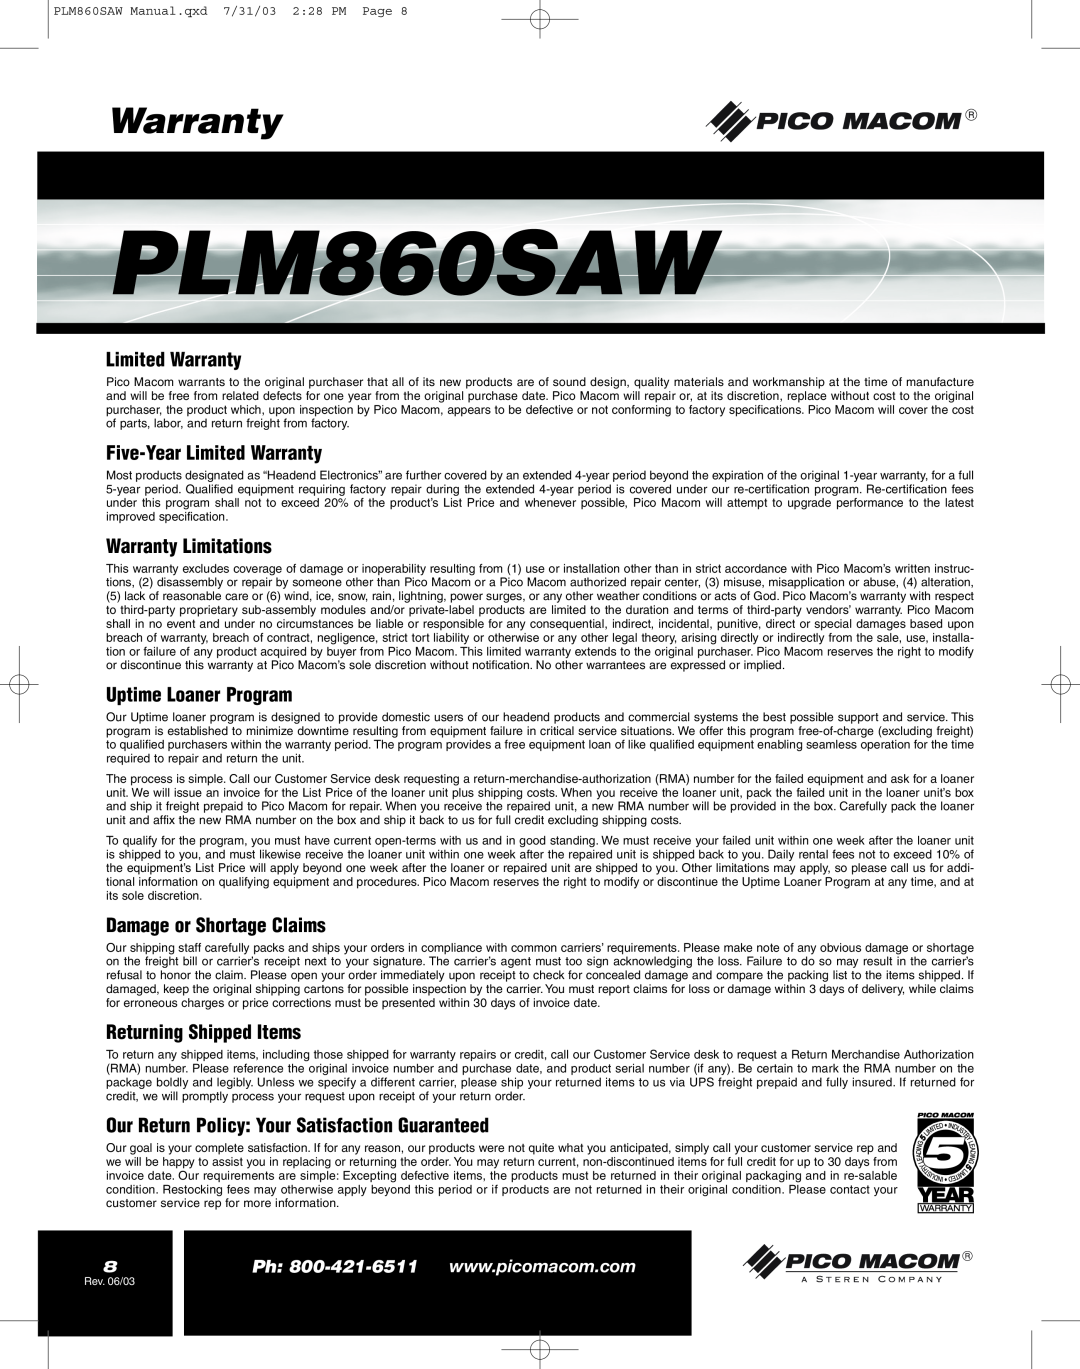 Pico Macom PFAM860SAW Five-YearLimited Warranty, Warranty Limitations, Uptime Loaner Program, PLM860SAW 